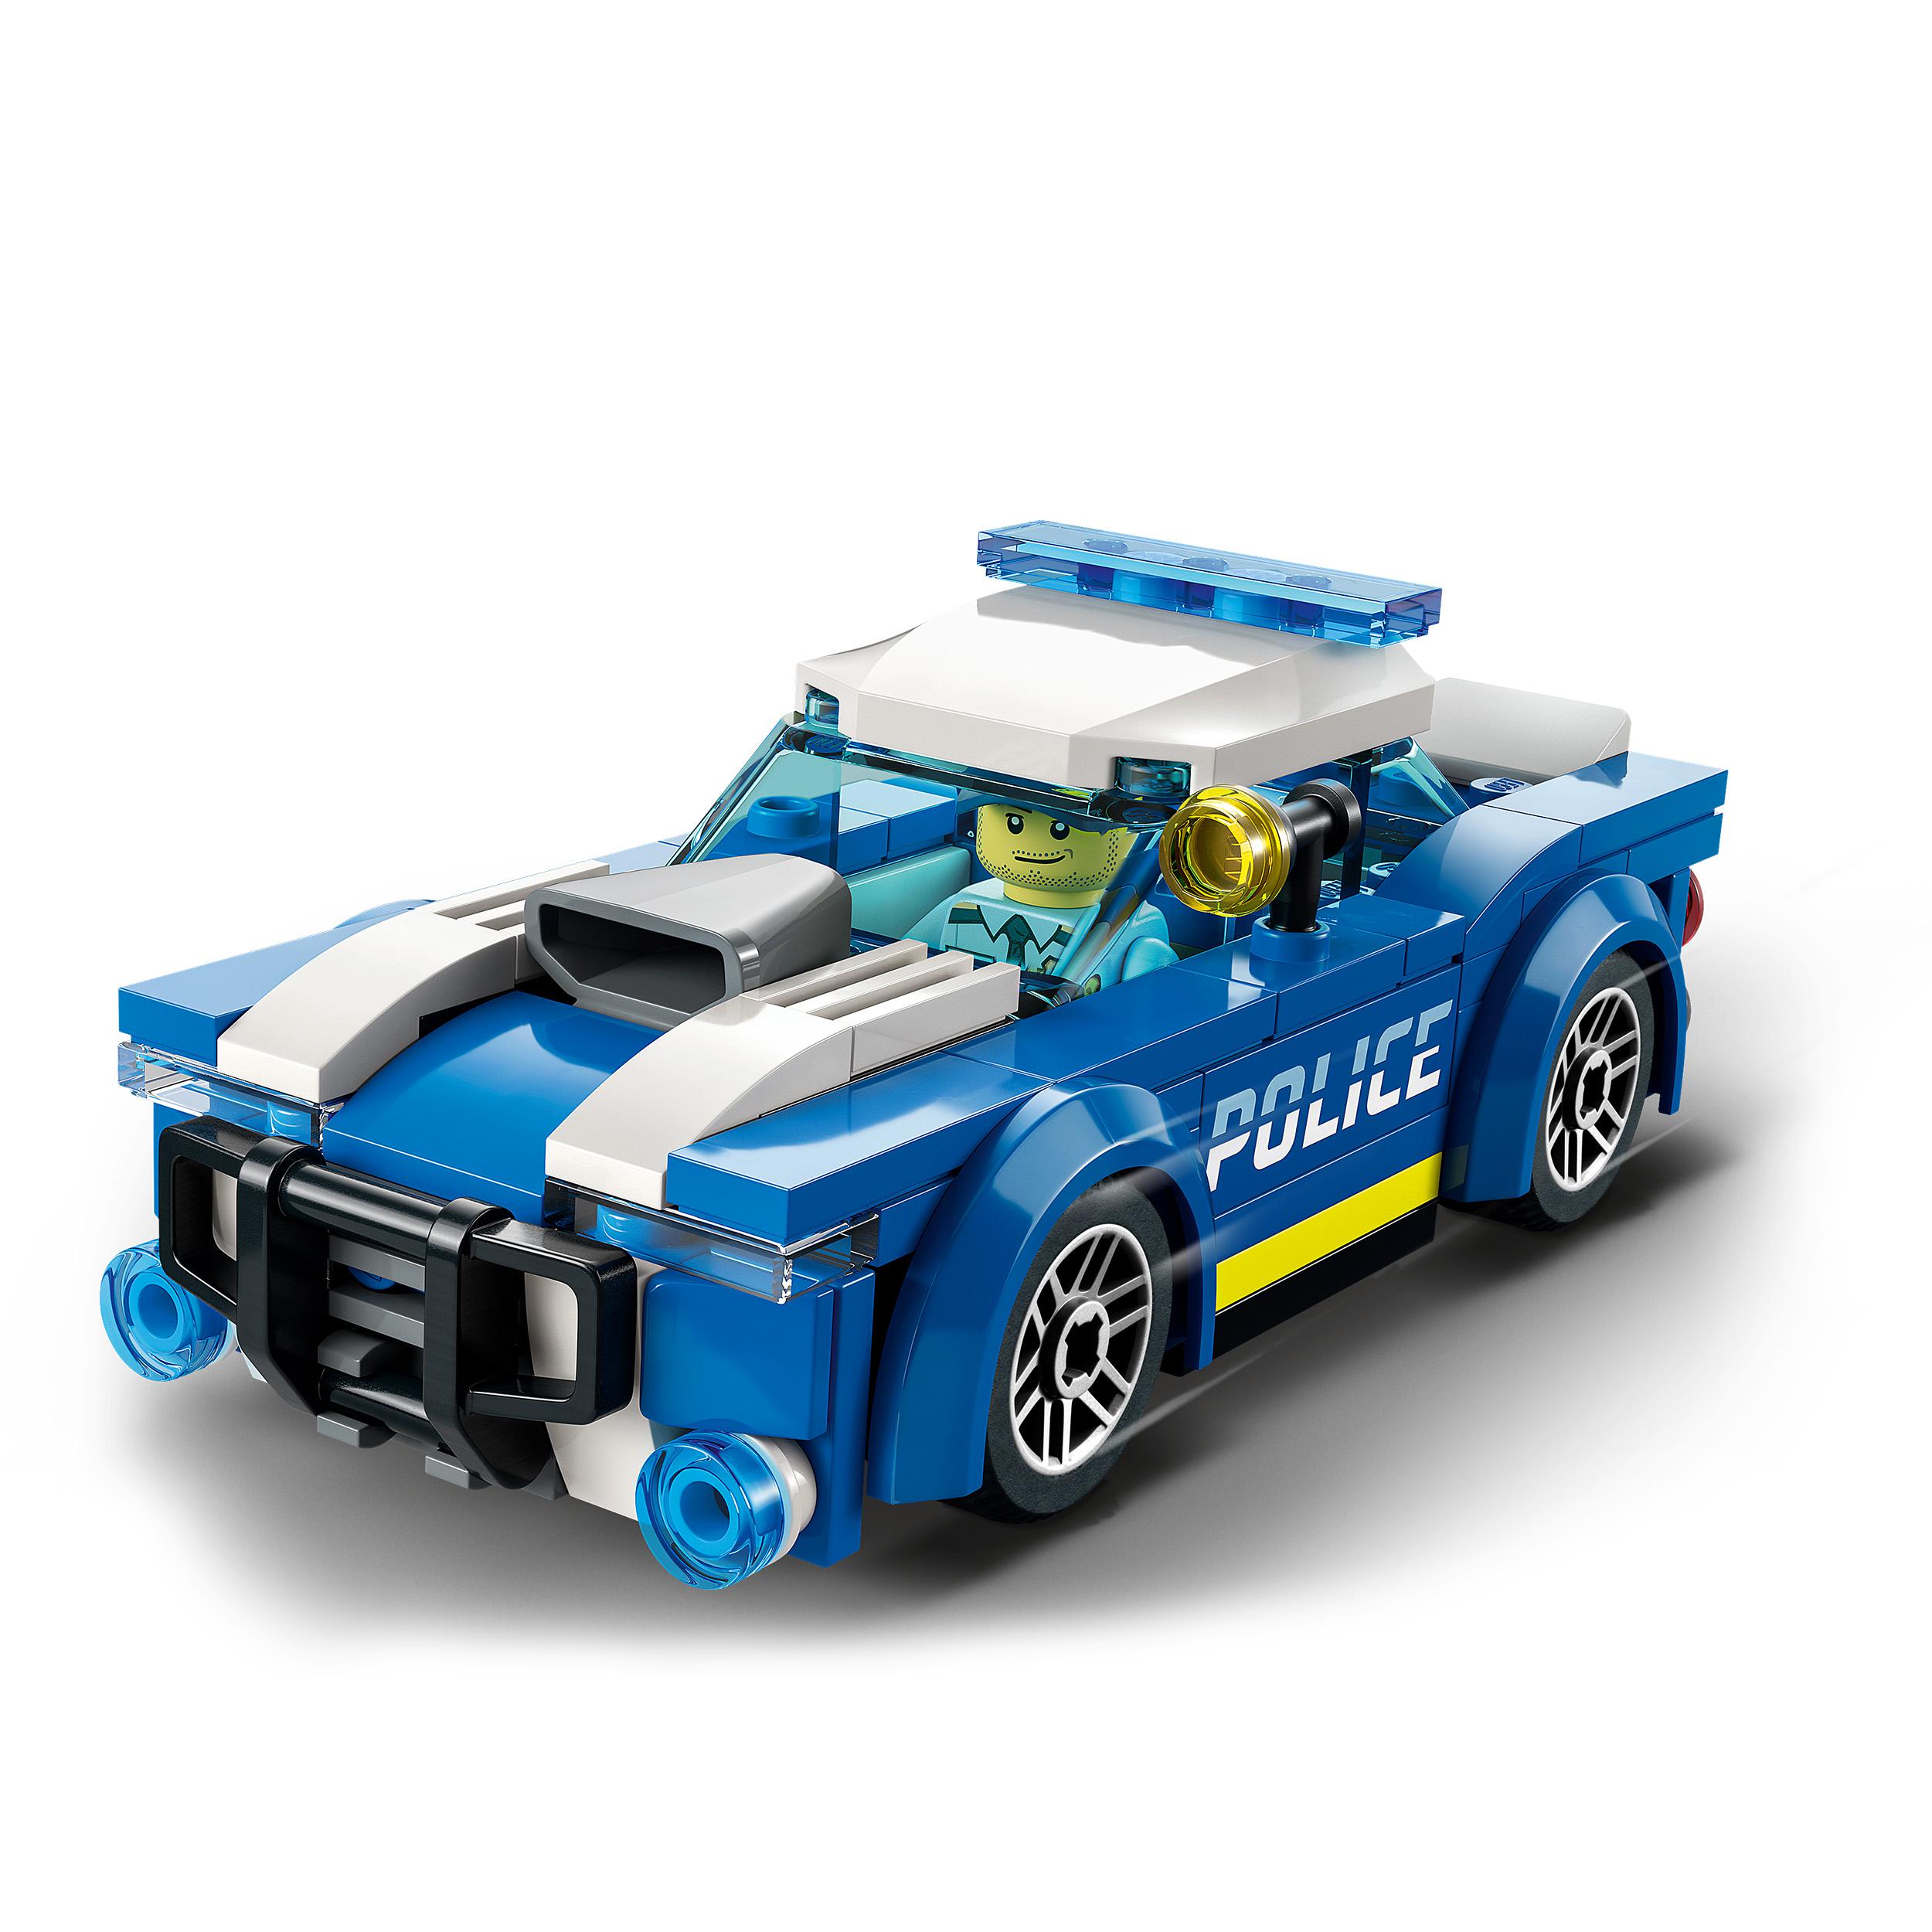 Lego city police auto della polizia, set di costruzione con minifigure e macchina giocattolo per bambini di 5+ anni, 60312 - LEGO CITY, Lego